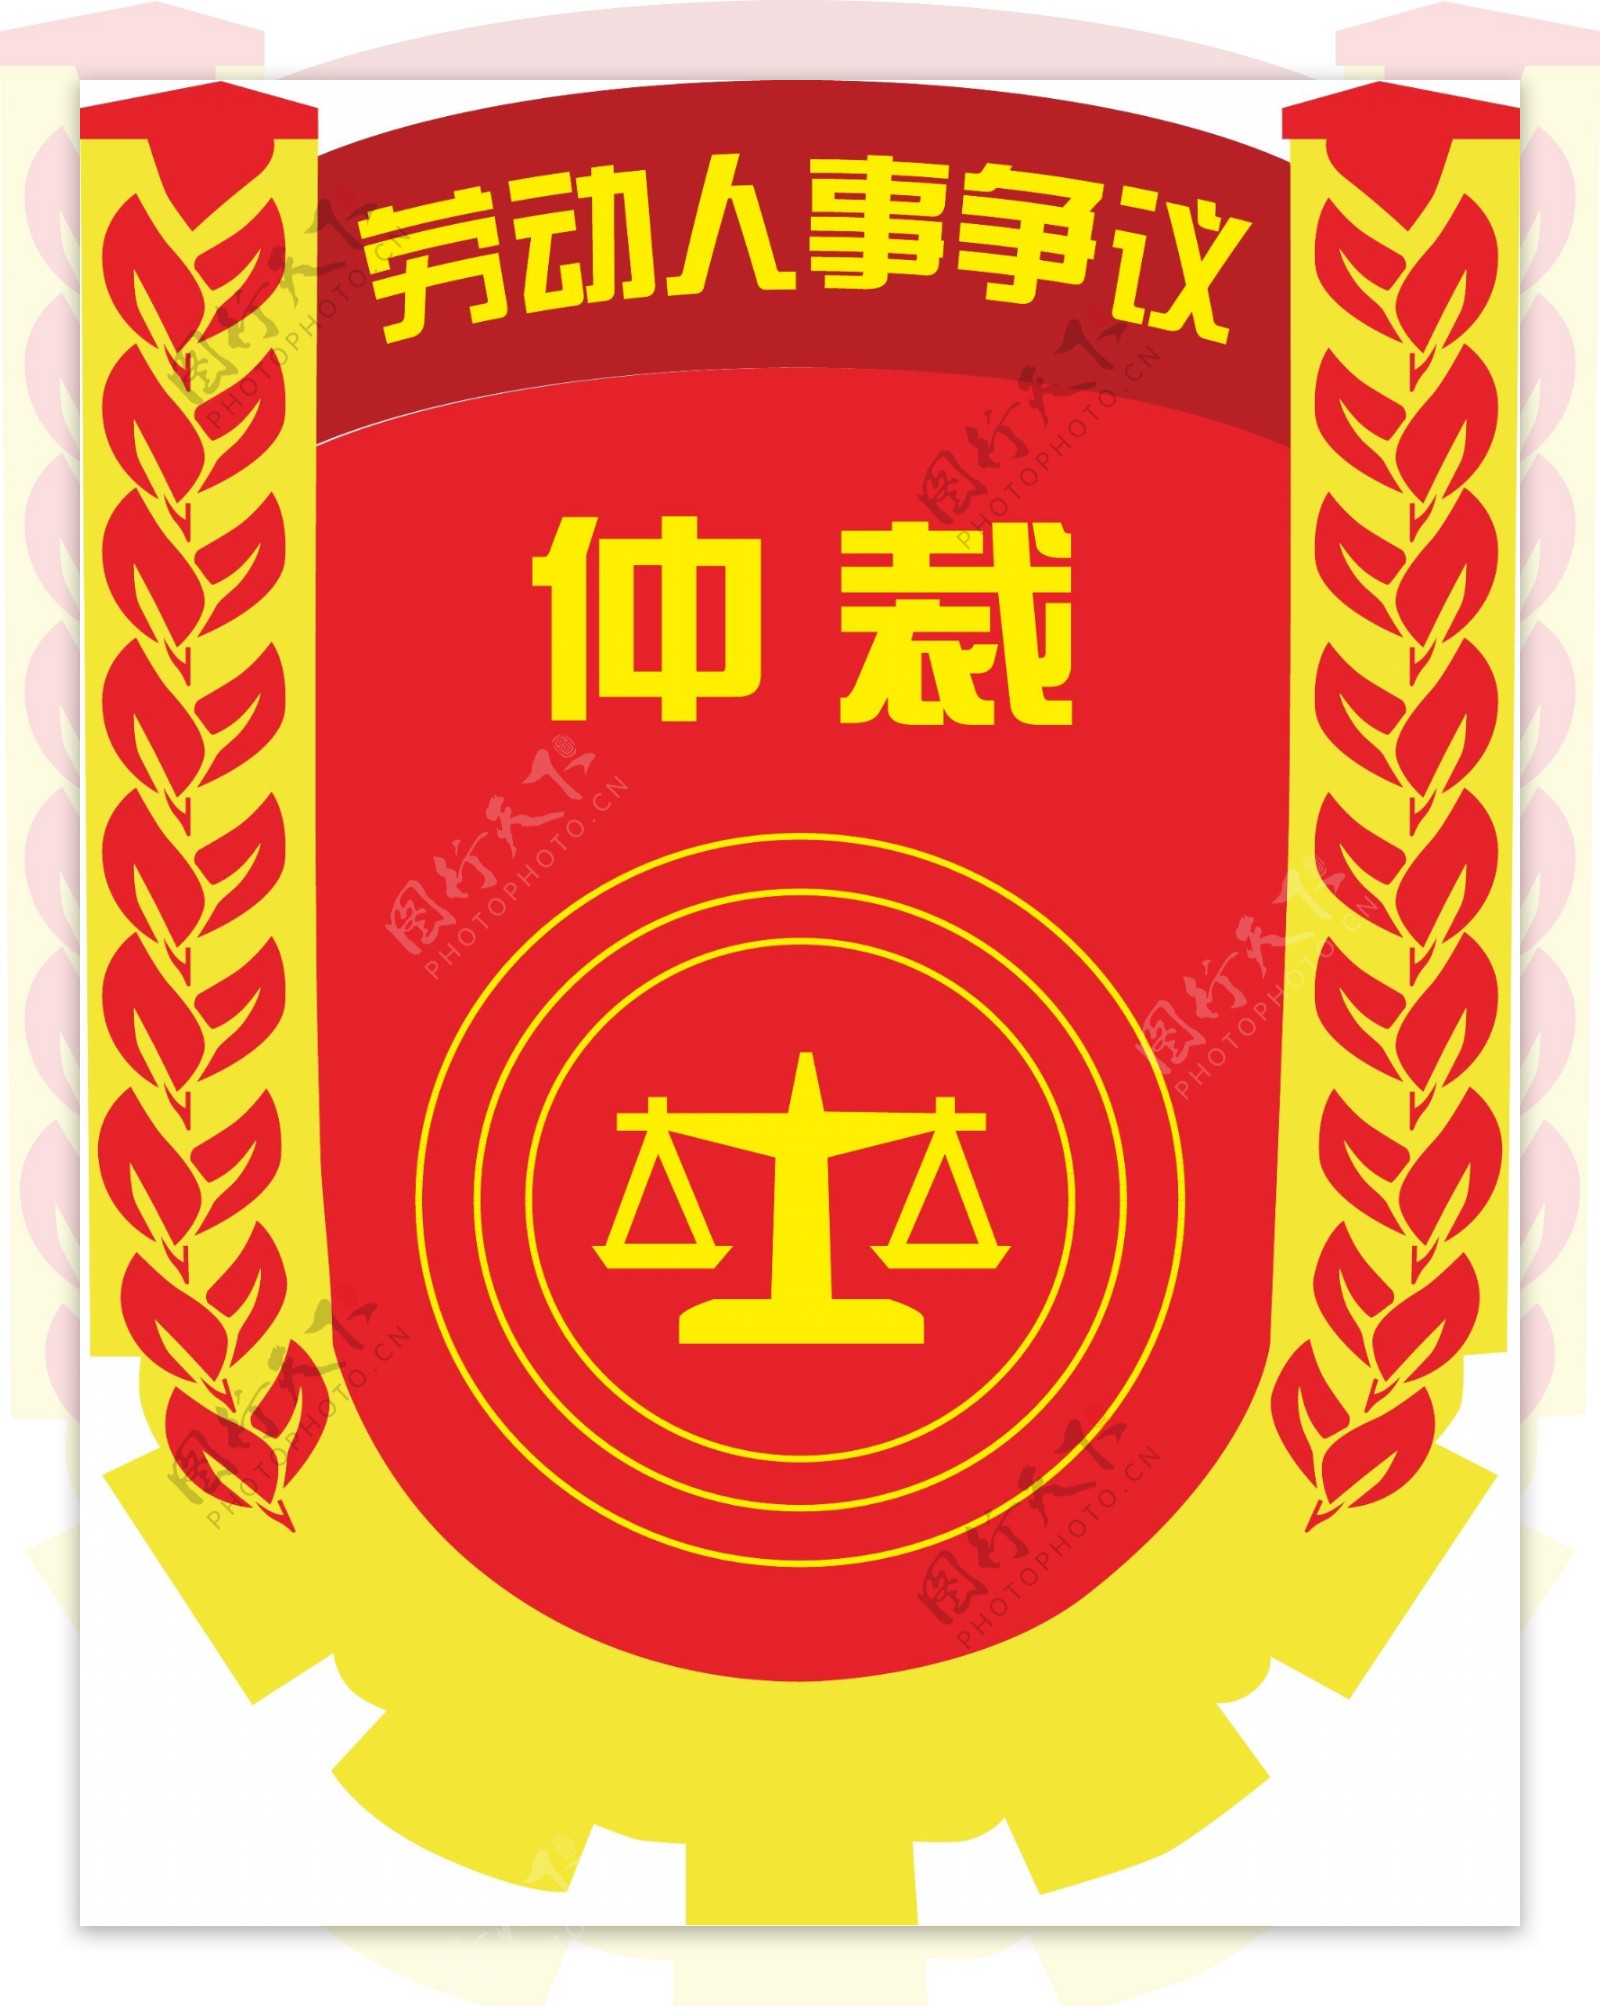 仲裁logo